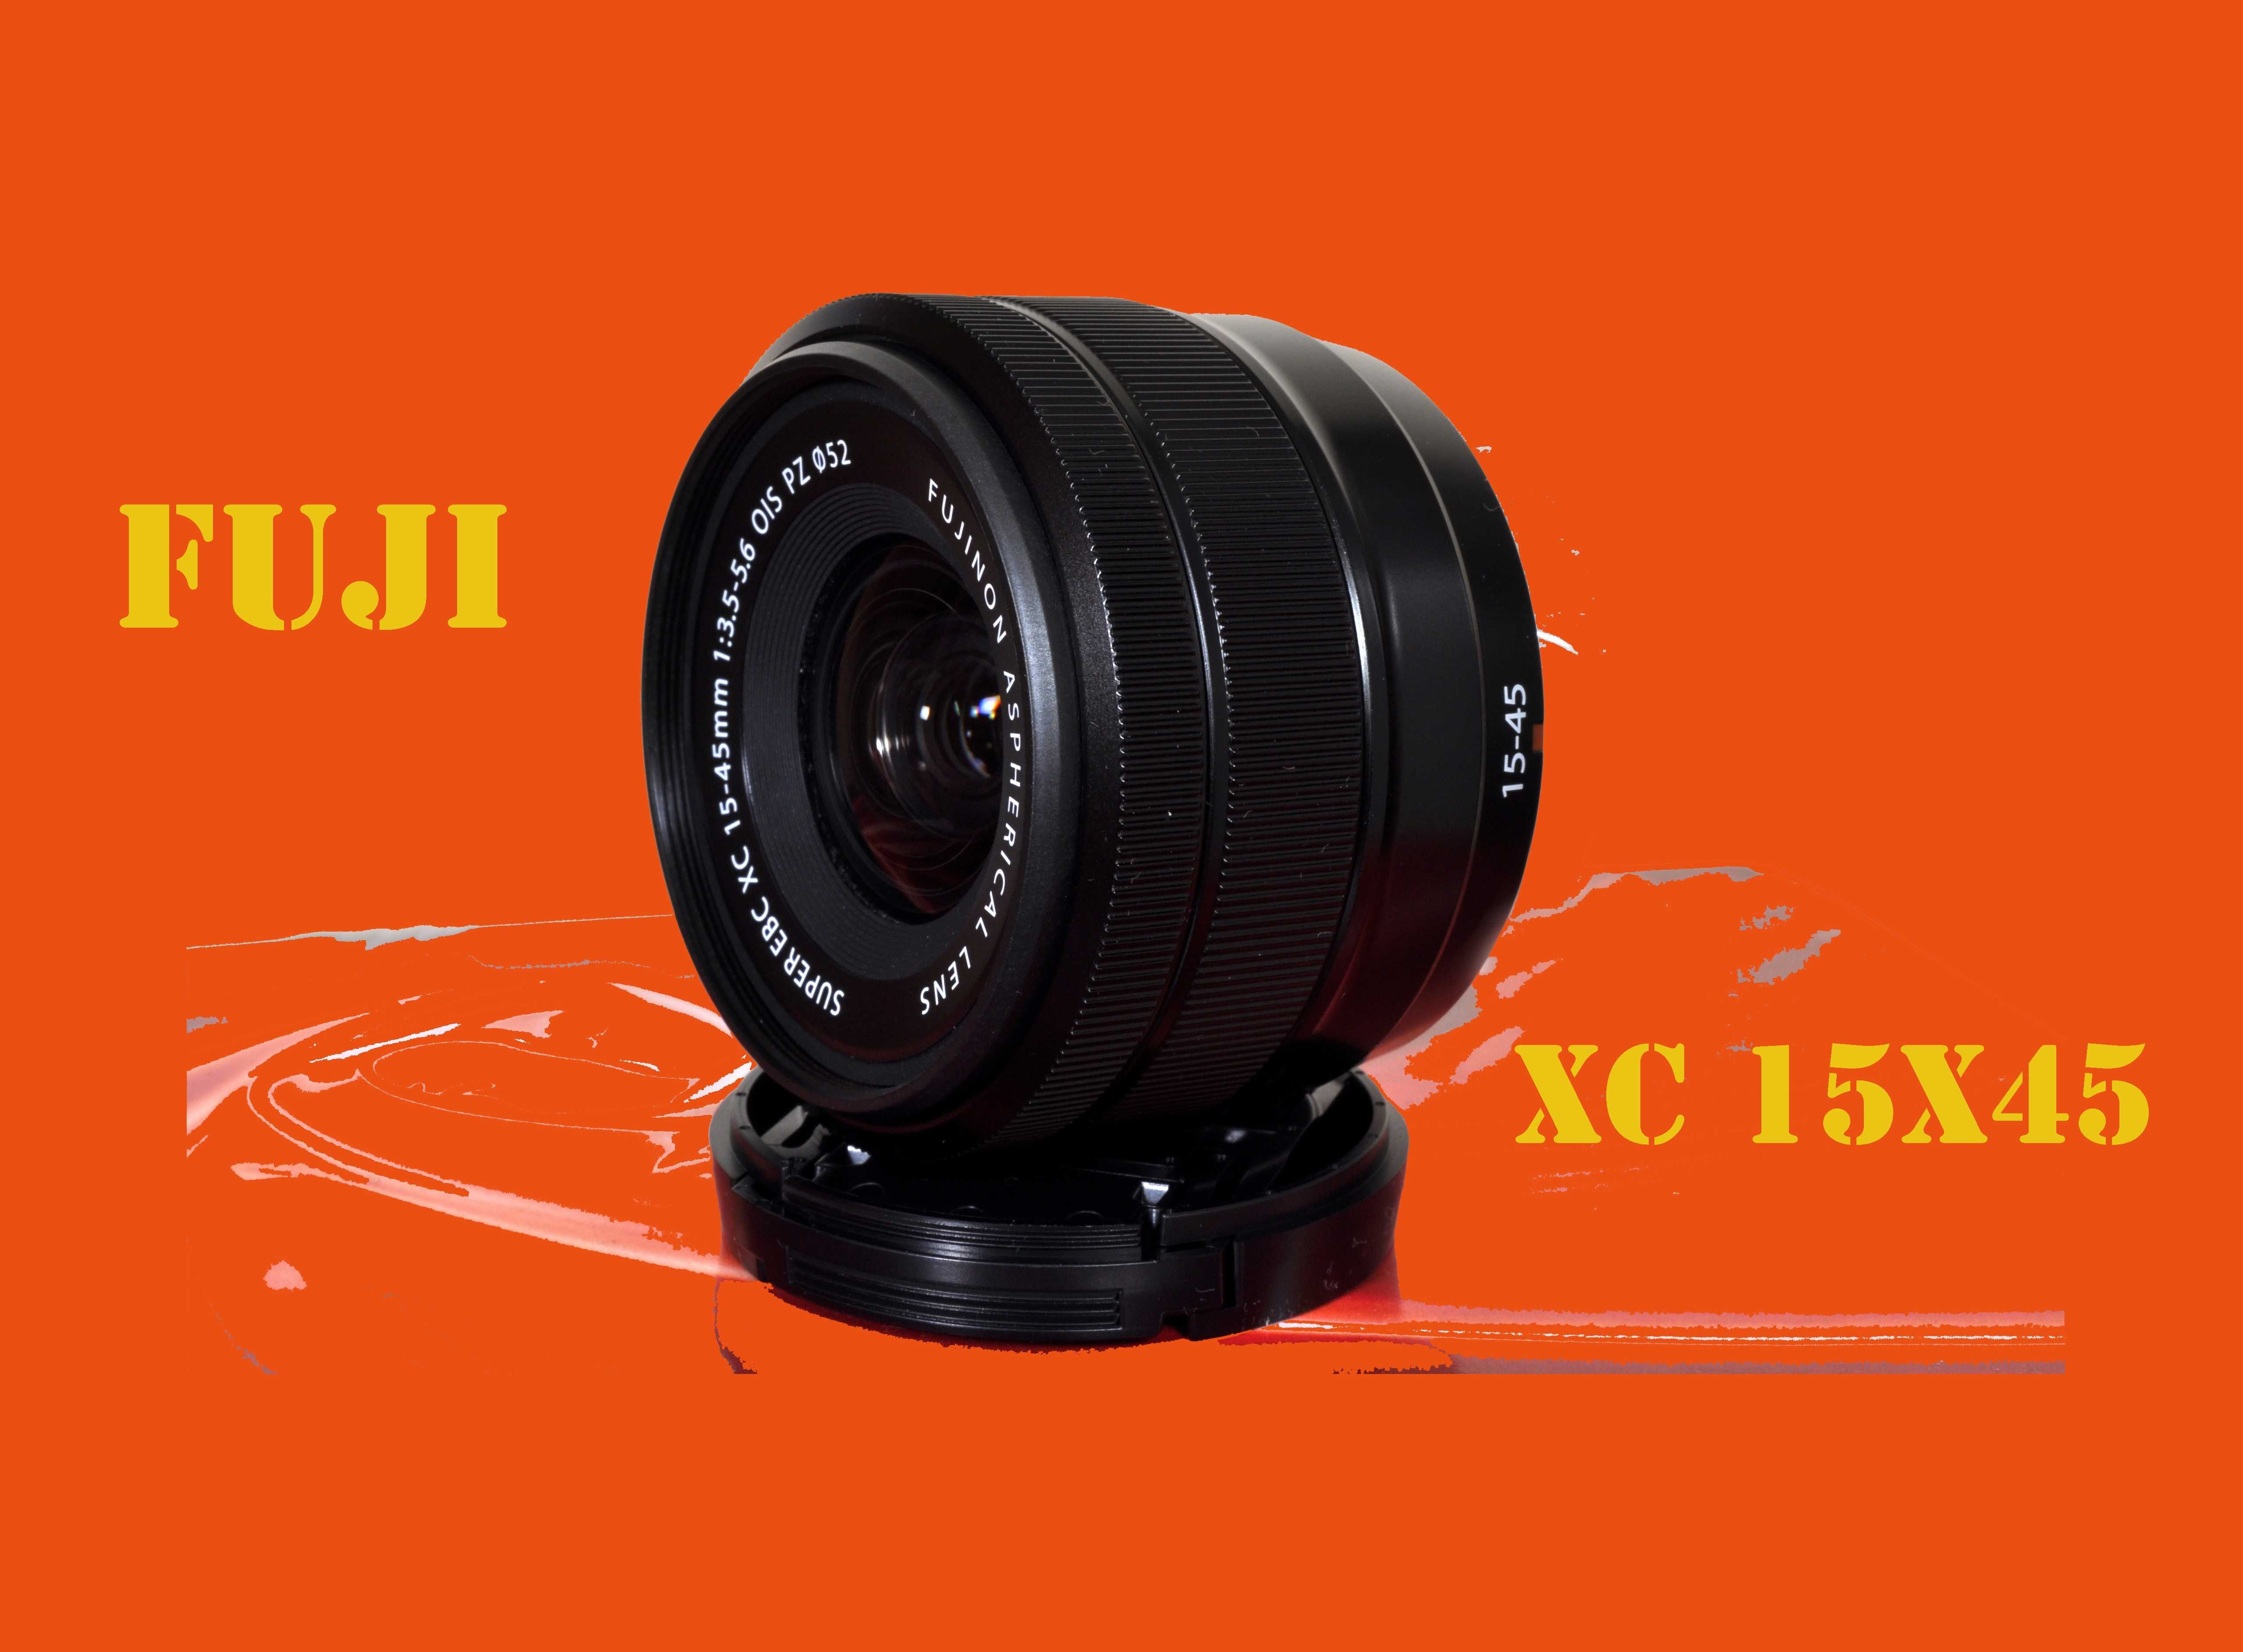 Fujifilm Xc 15x45 OIS, NOVA, caixa e acessórios. Garantia Fuji 3 anos